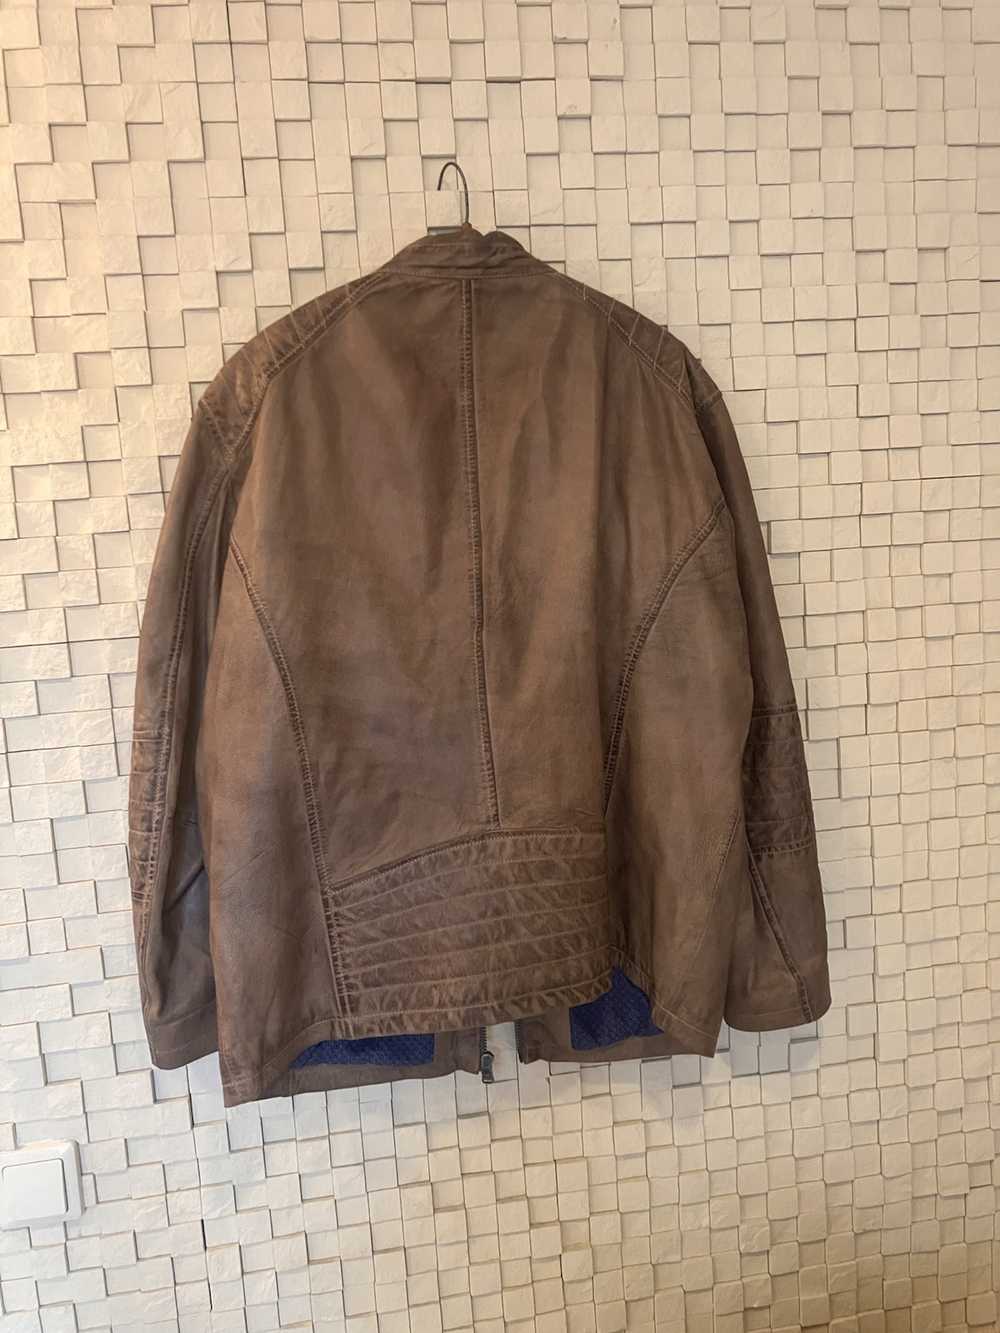 Vintage Vintage Emilio Adani Leather Jacket - image 2